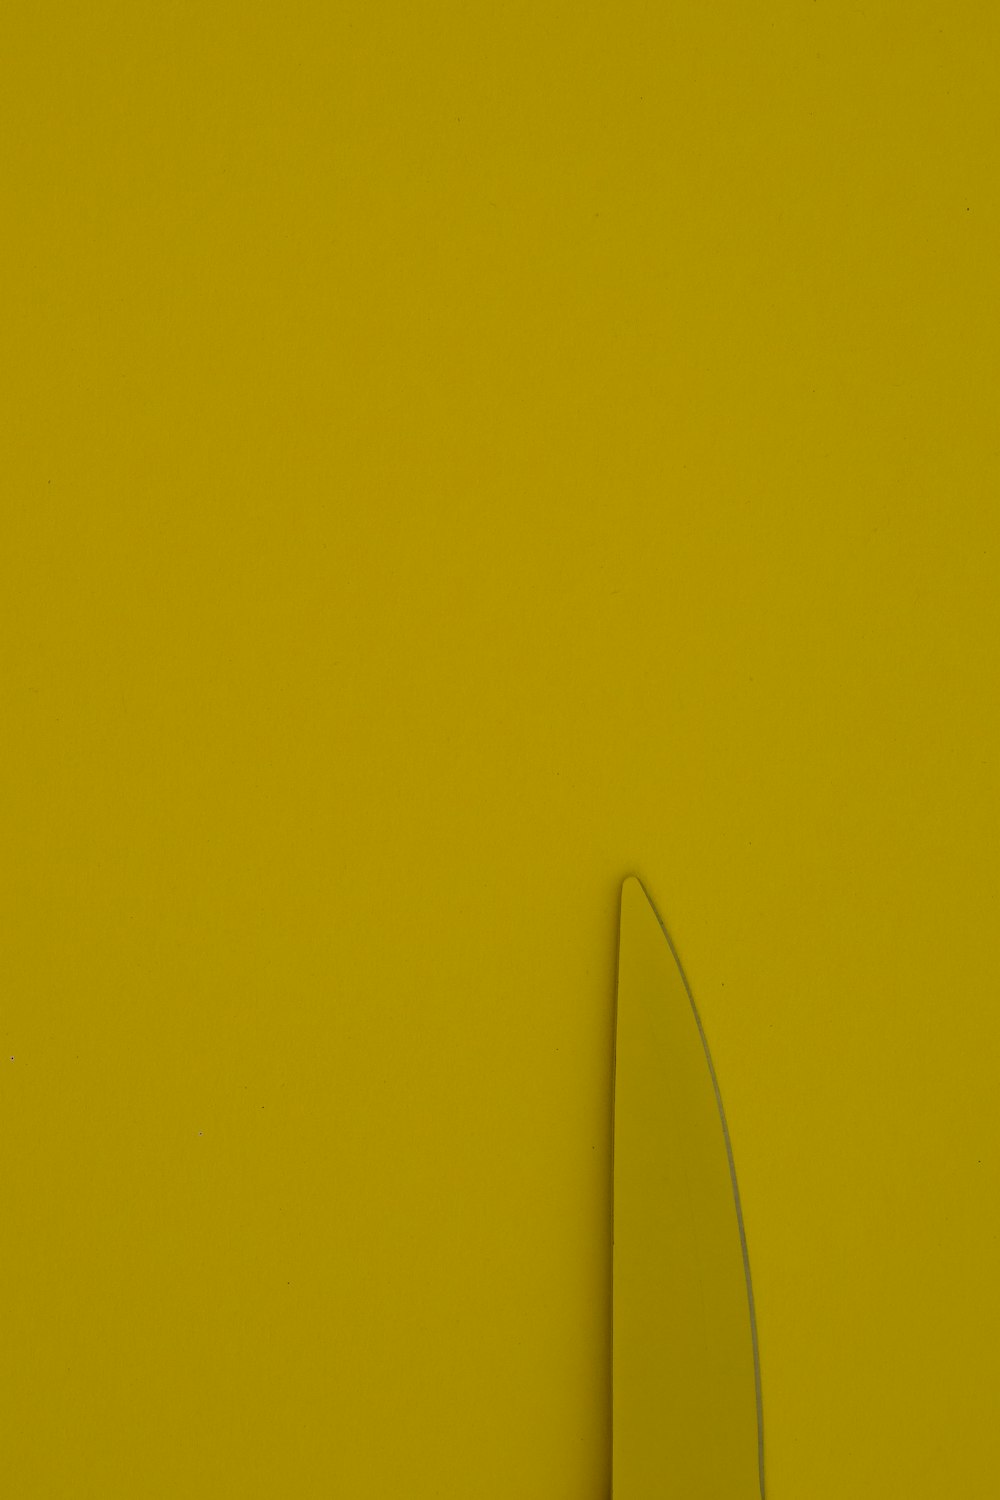 黄色い壁に黒いワイヤー